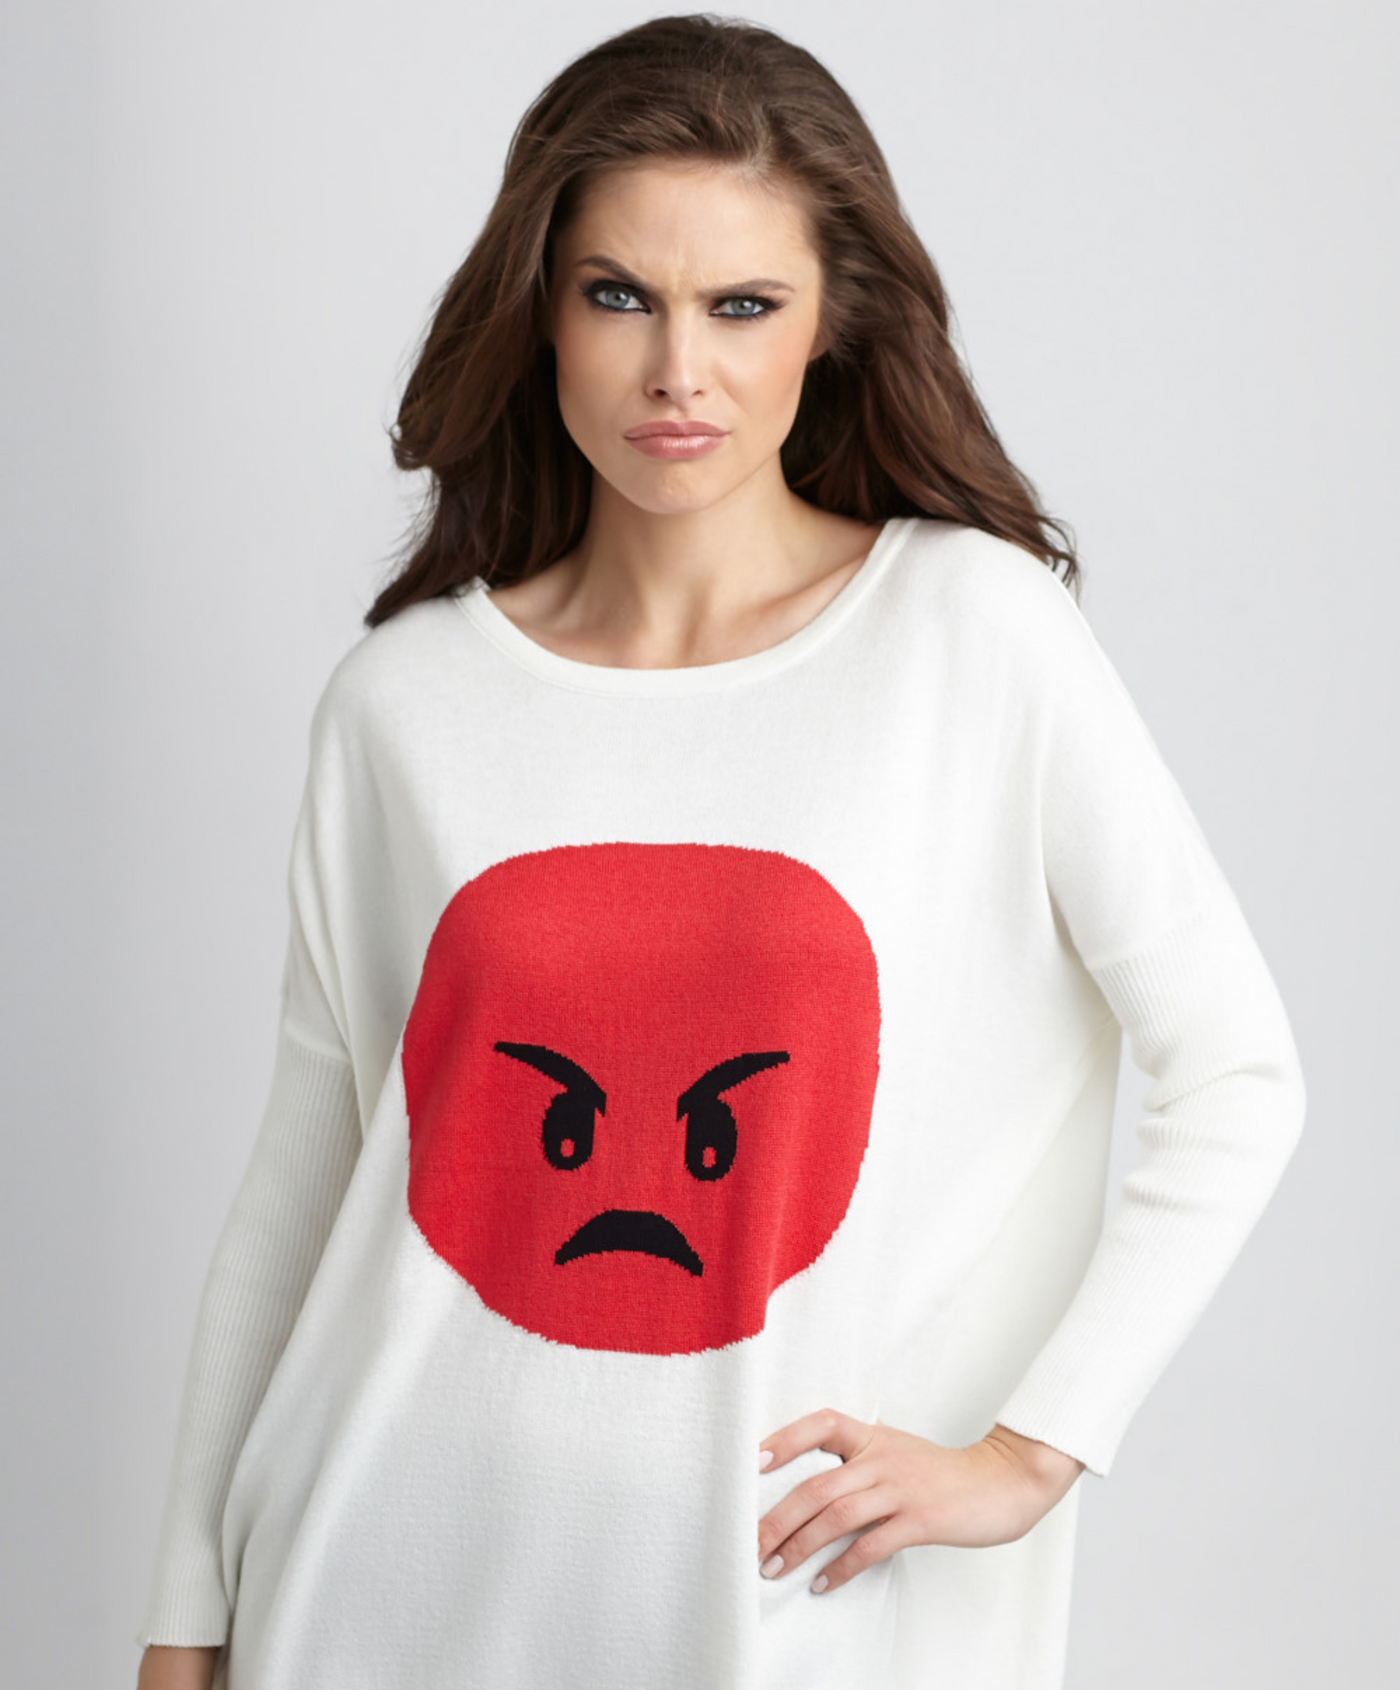 Angry Emoji Top